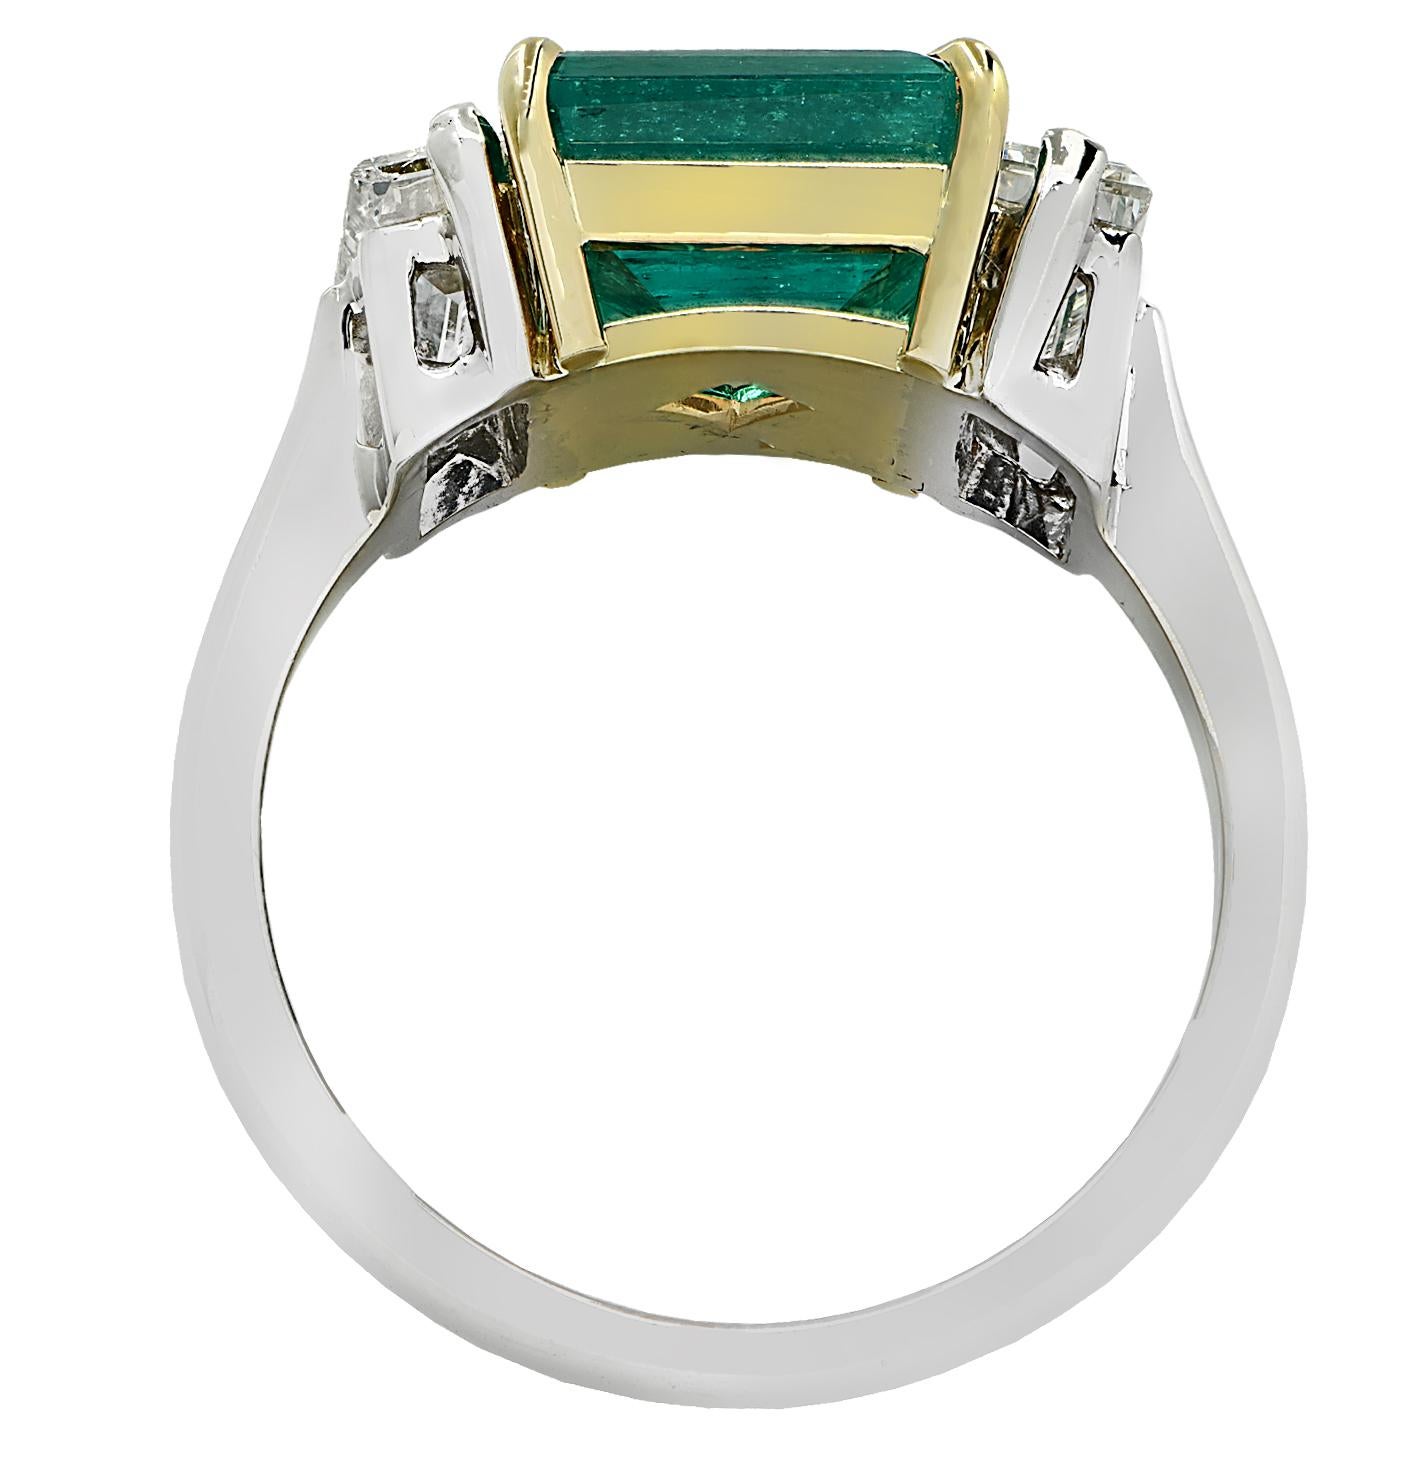 Dieser spektakuläre Ring aus dem Hause Vivid Diamonds wurde von Hand aus 18 Karat Gelb- und Weißgold gefertigt und präsentiert einen AGL-zertifizierten, hellgrünen Smaragd mit einem Gesamtgewicht von 2,67 Karat, der auf moderne Weise bearbeitet